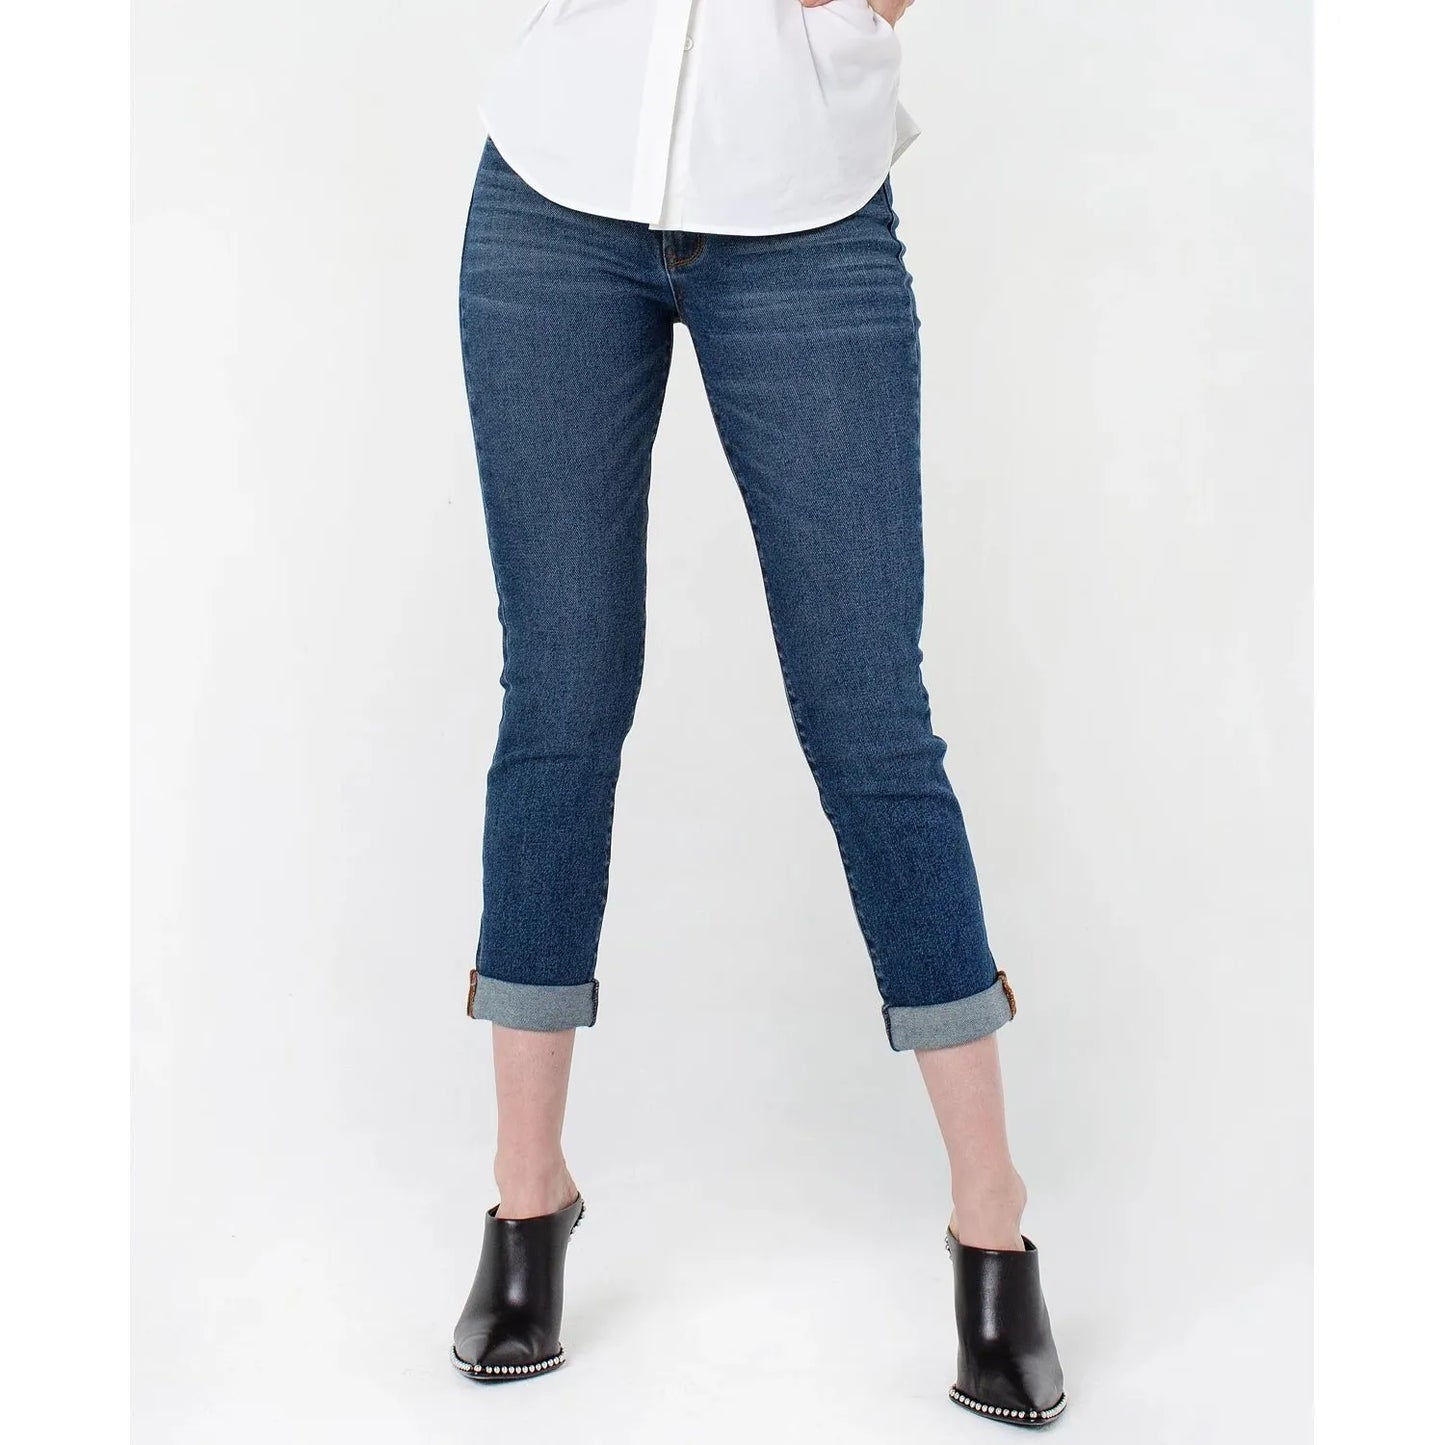 RACHEL-RACHEL Womens Roll Cuff Girlfriend Jeans, Blue, Size: 4 - Brandat Outlet